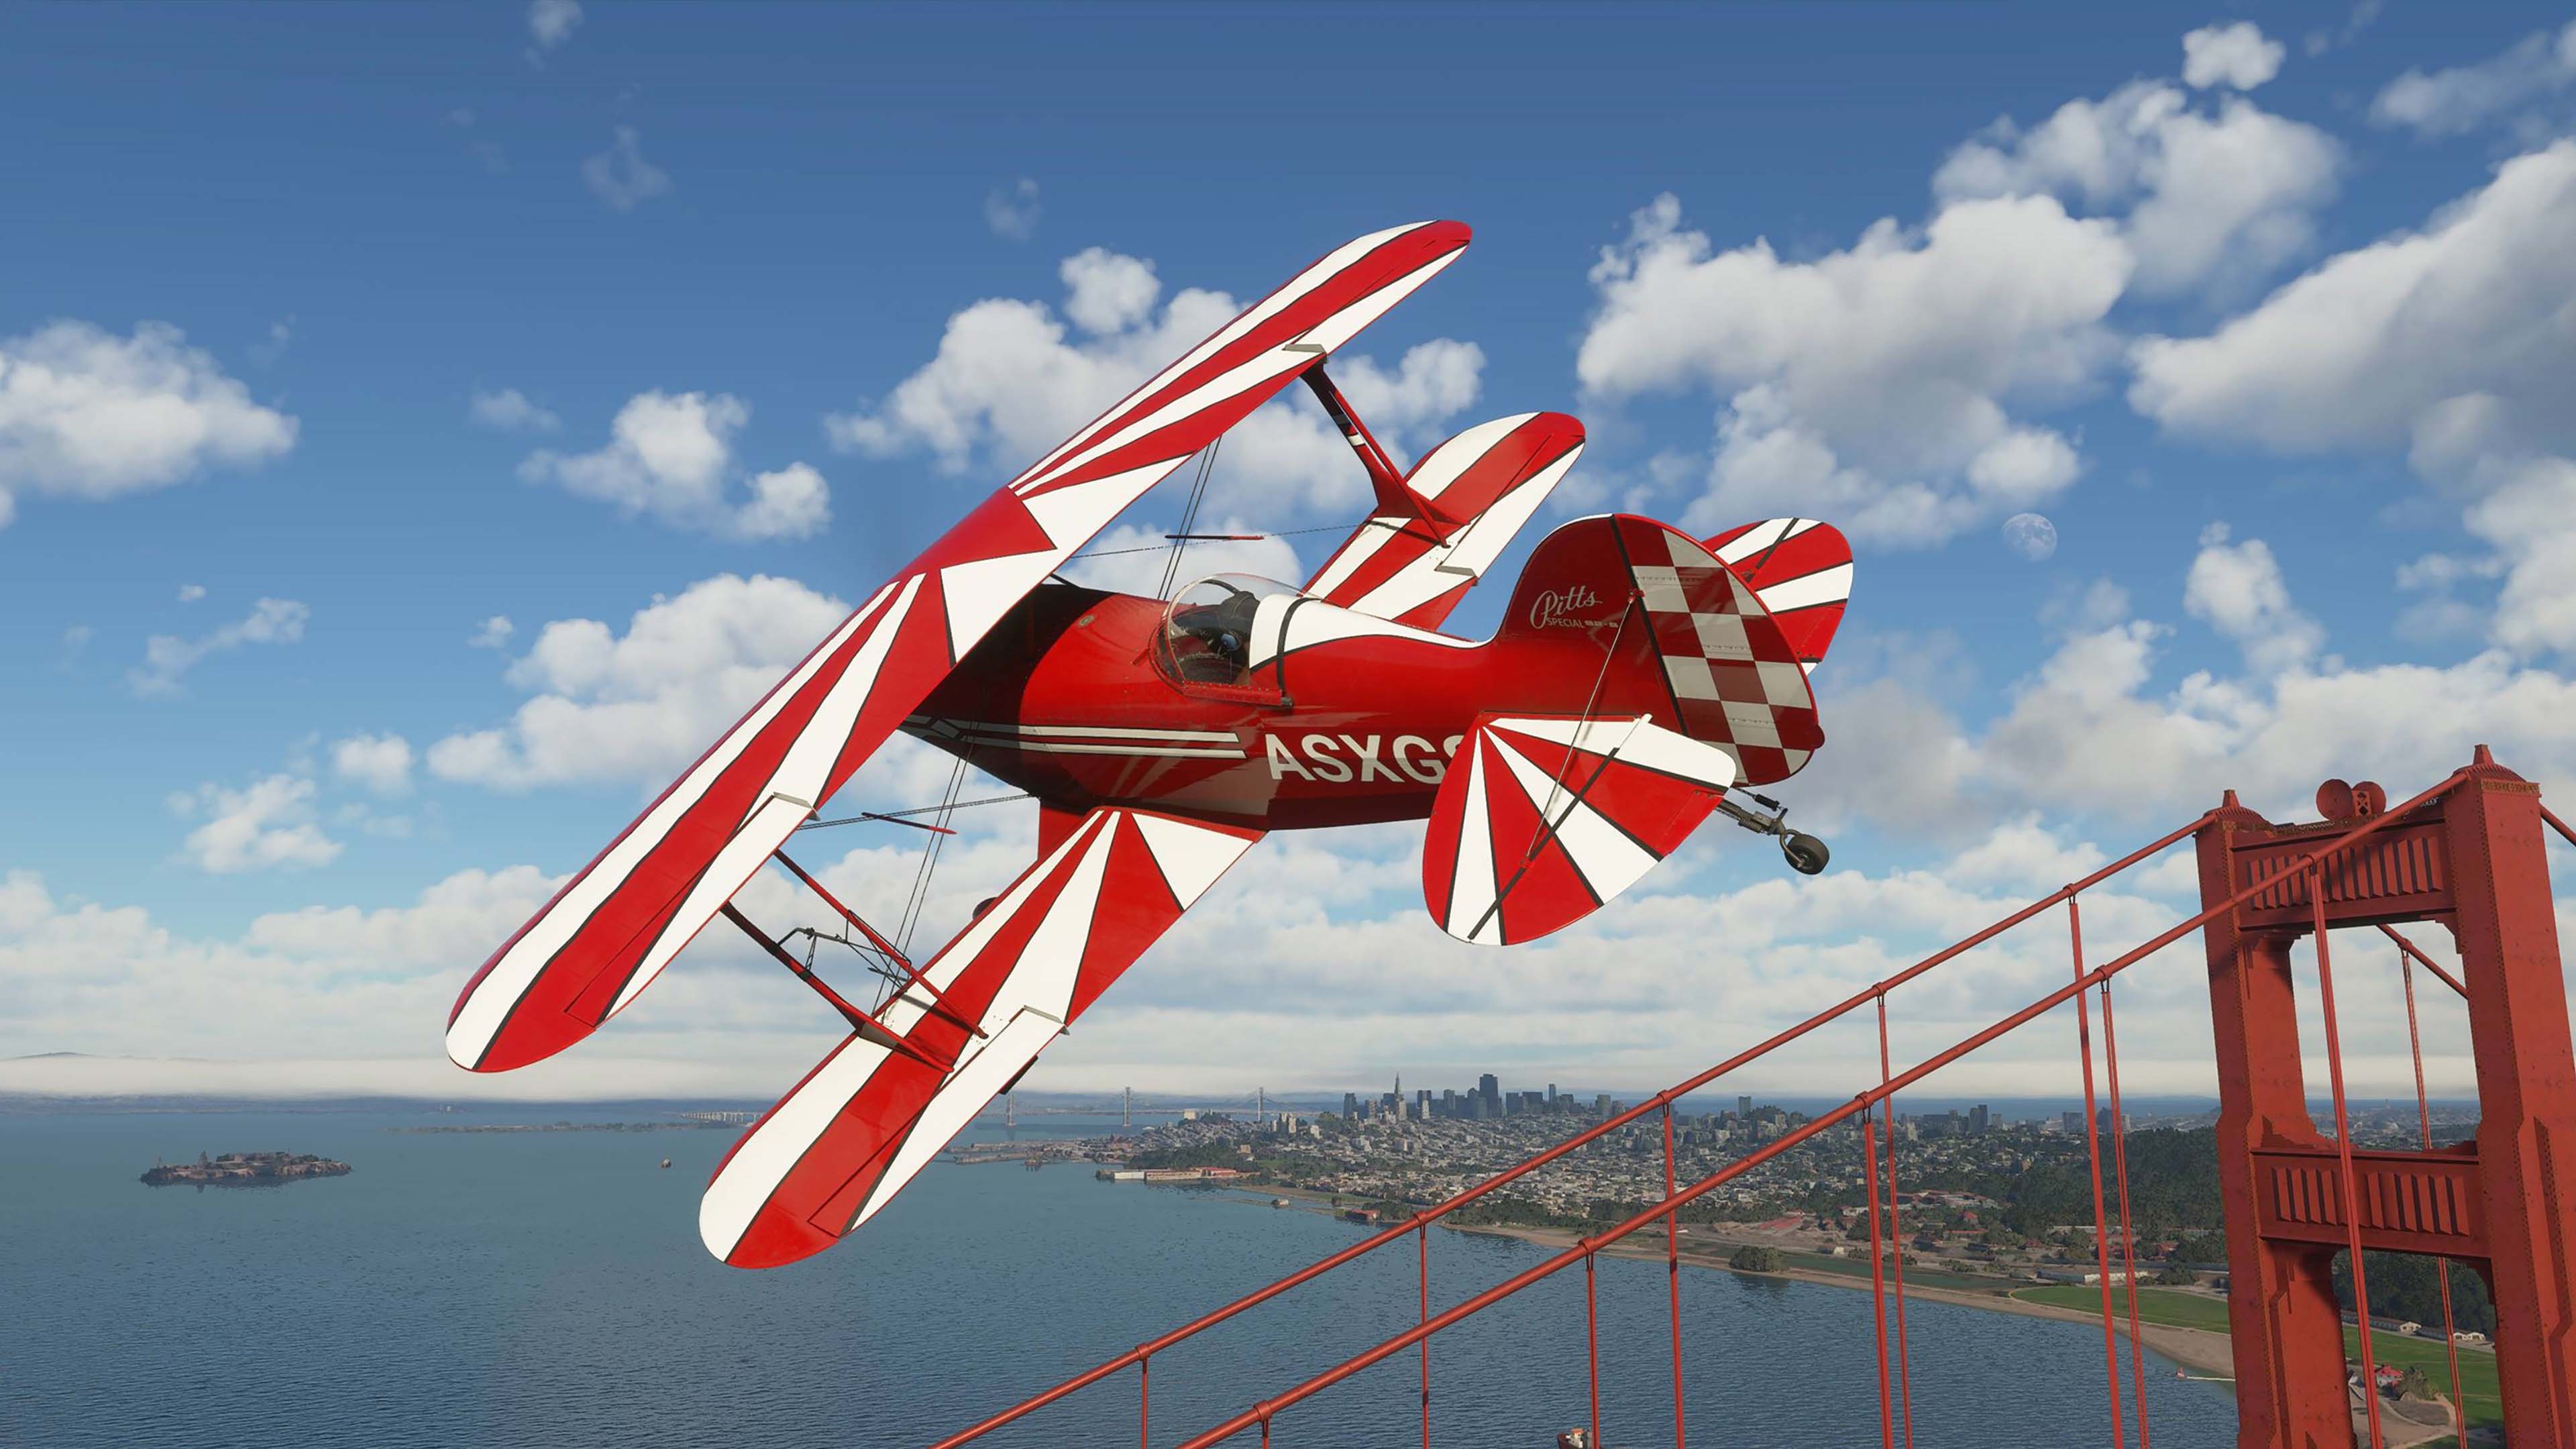 《微软飞行模拟》PC版发售日公布 XB1版稍后发售